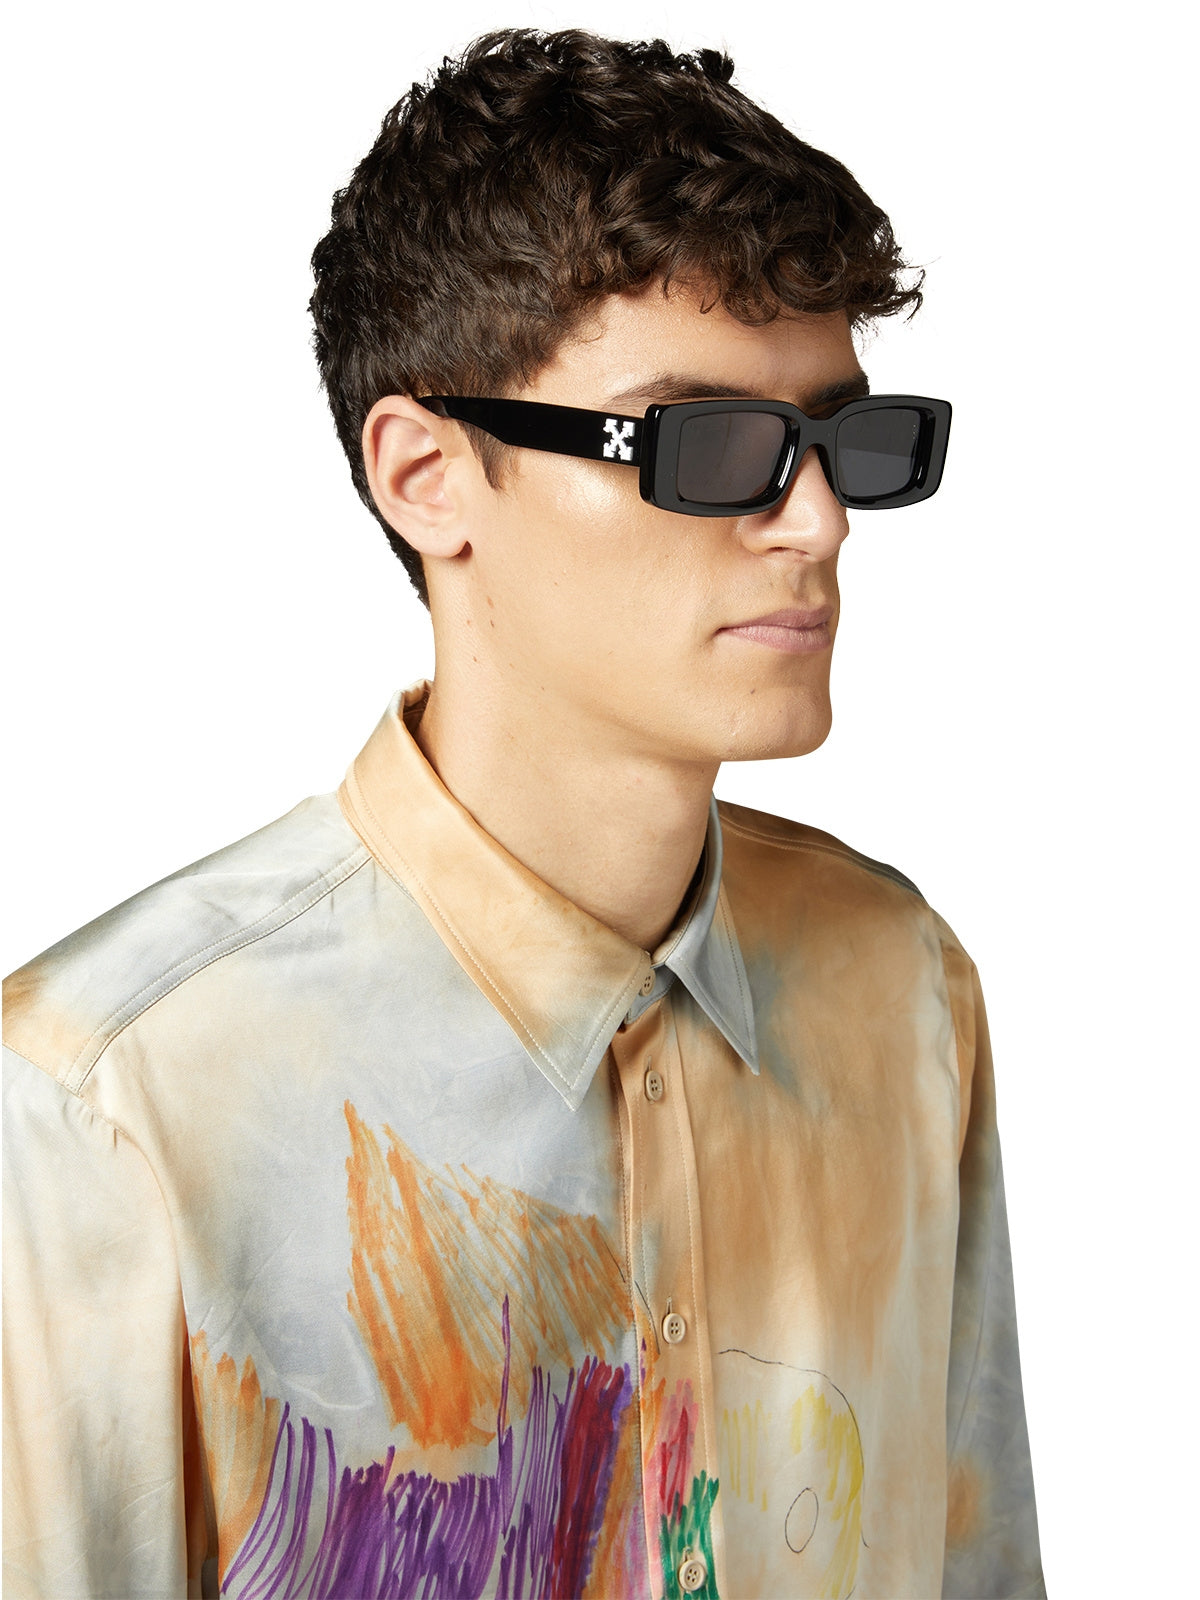 Off-White Arthur Sunglasses OERI016C99PLA0025907 Teal Frame Dark